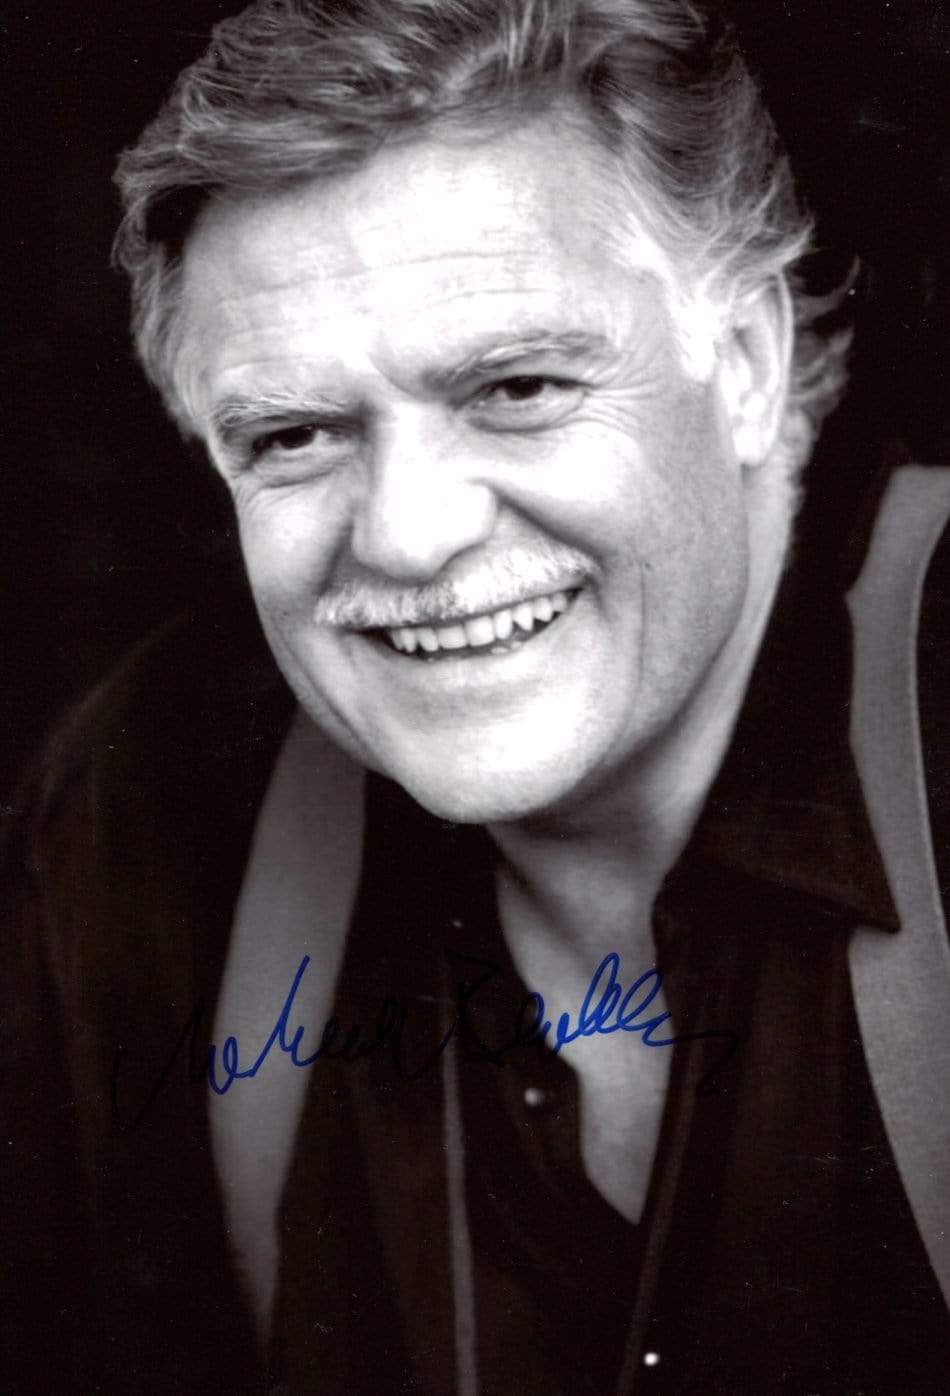 Ballhaus, Michael autograph